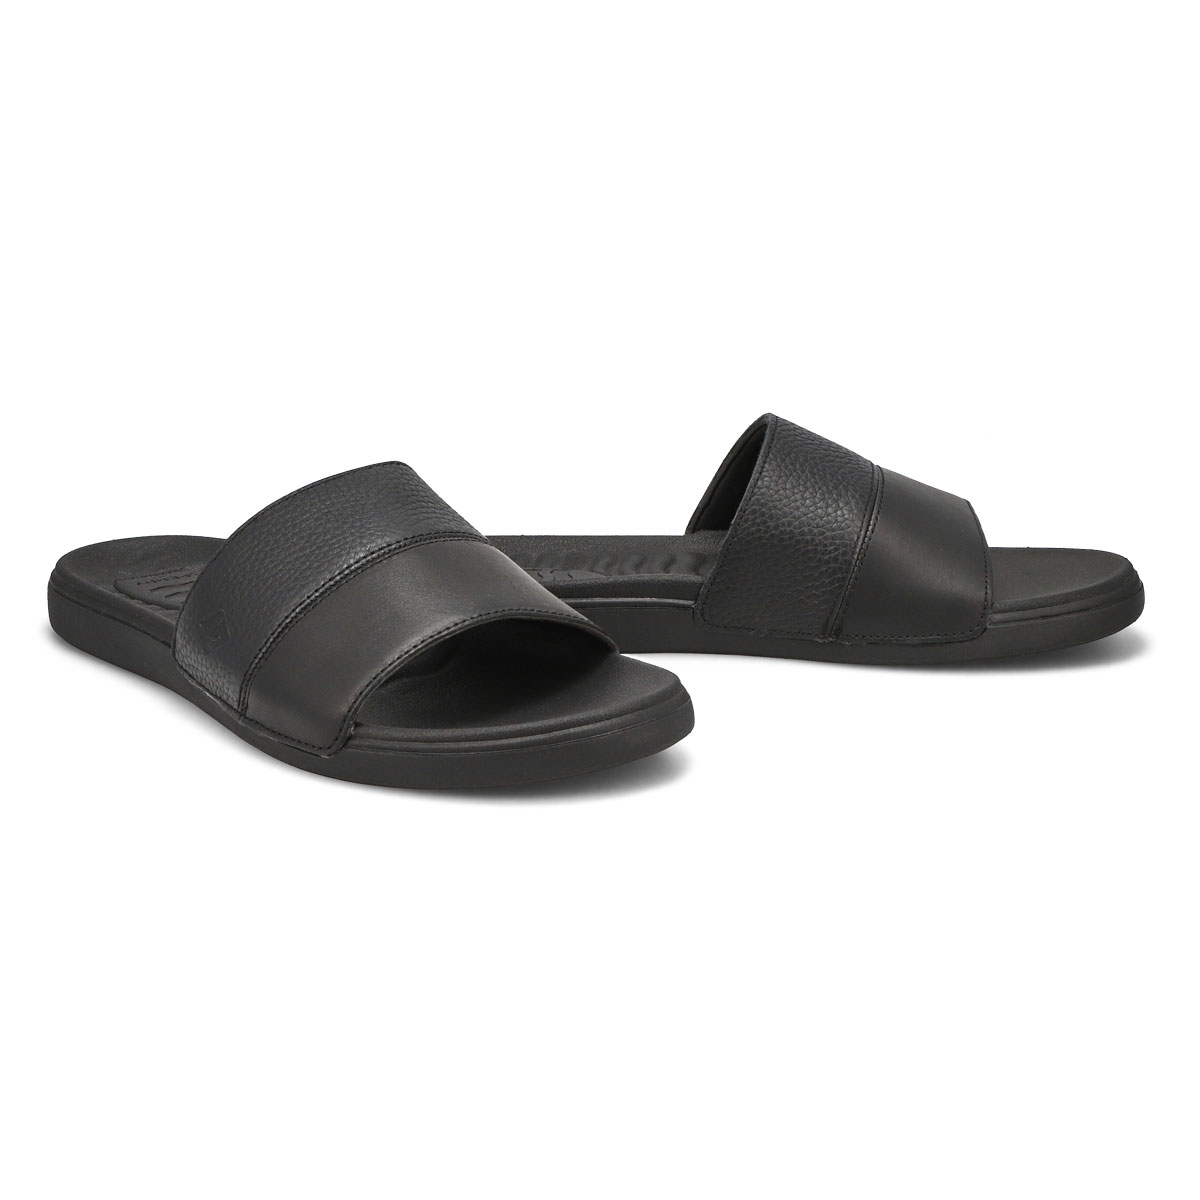 Men's Plushwave Dock Slide Sandal - Black